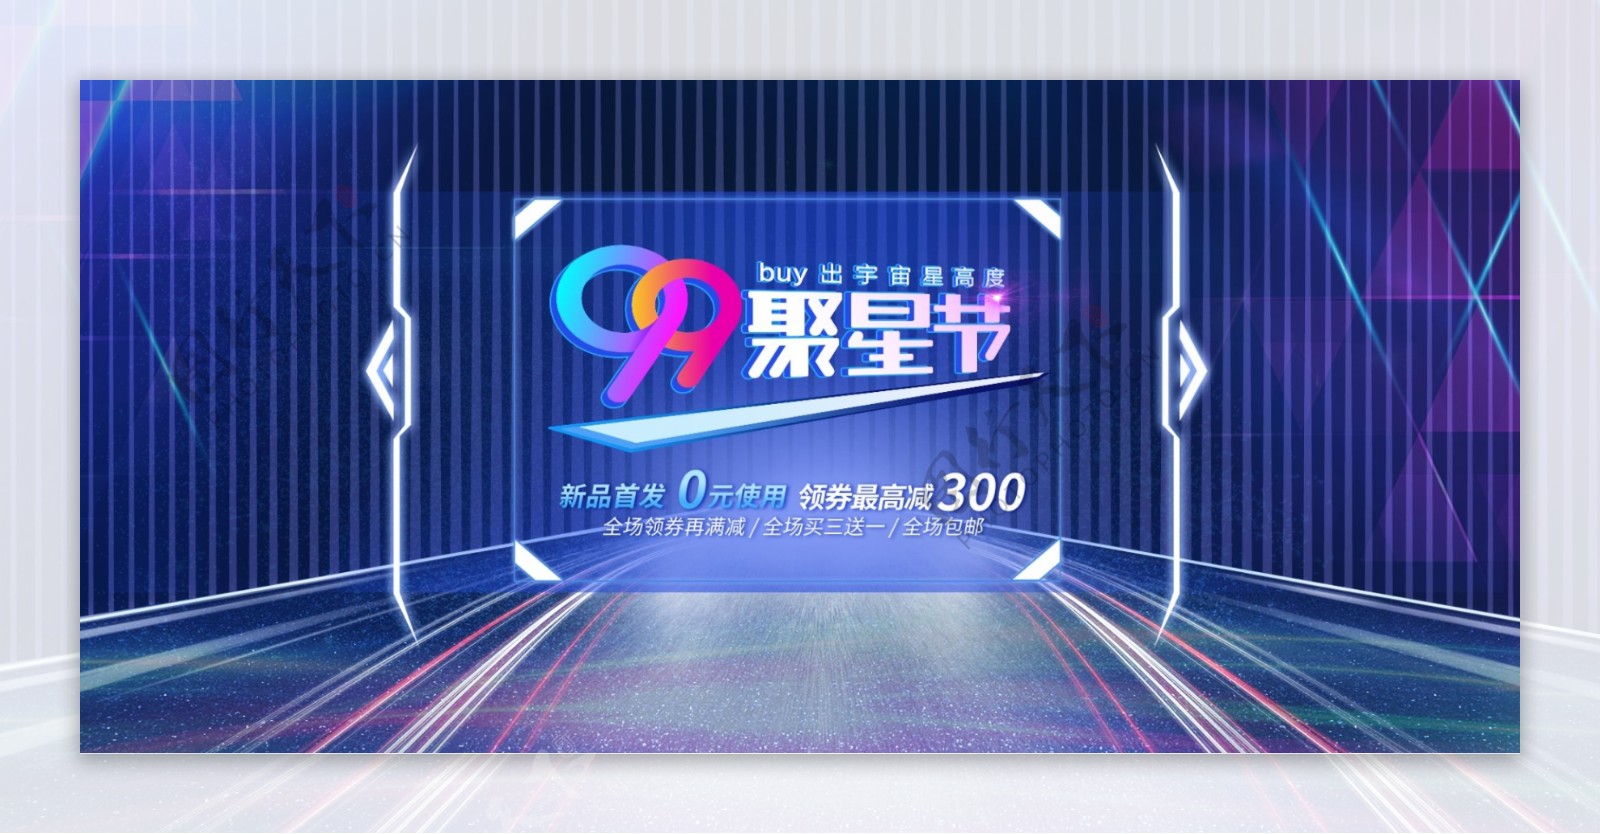 99聚星节数码电器促销炫酷banner